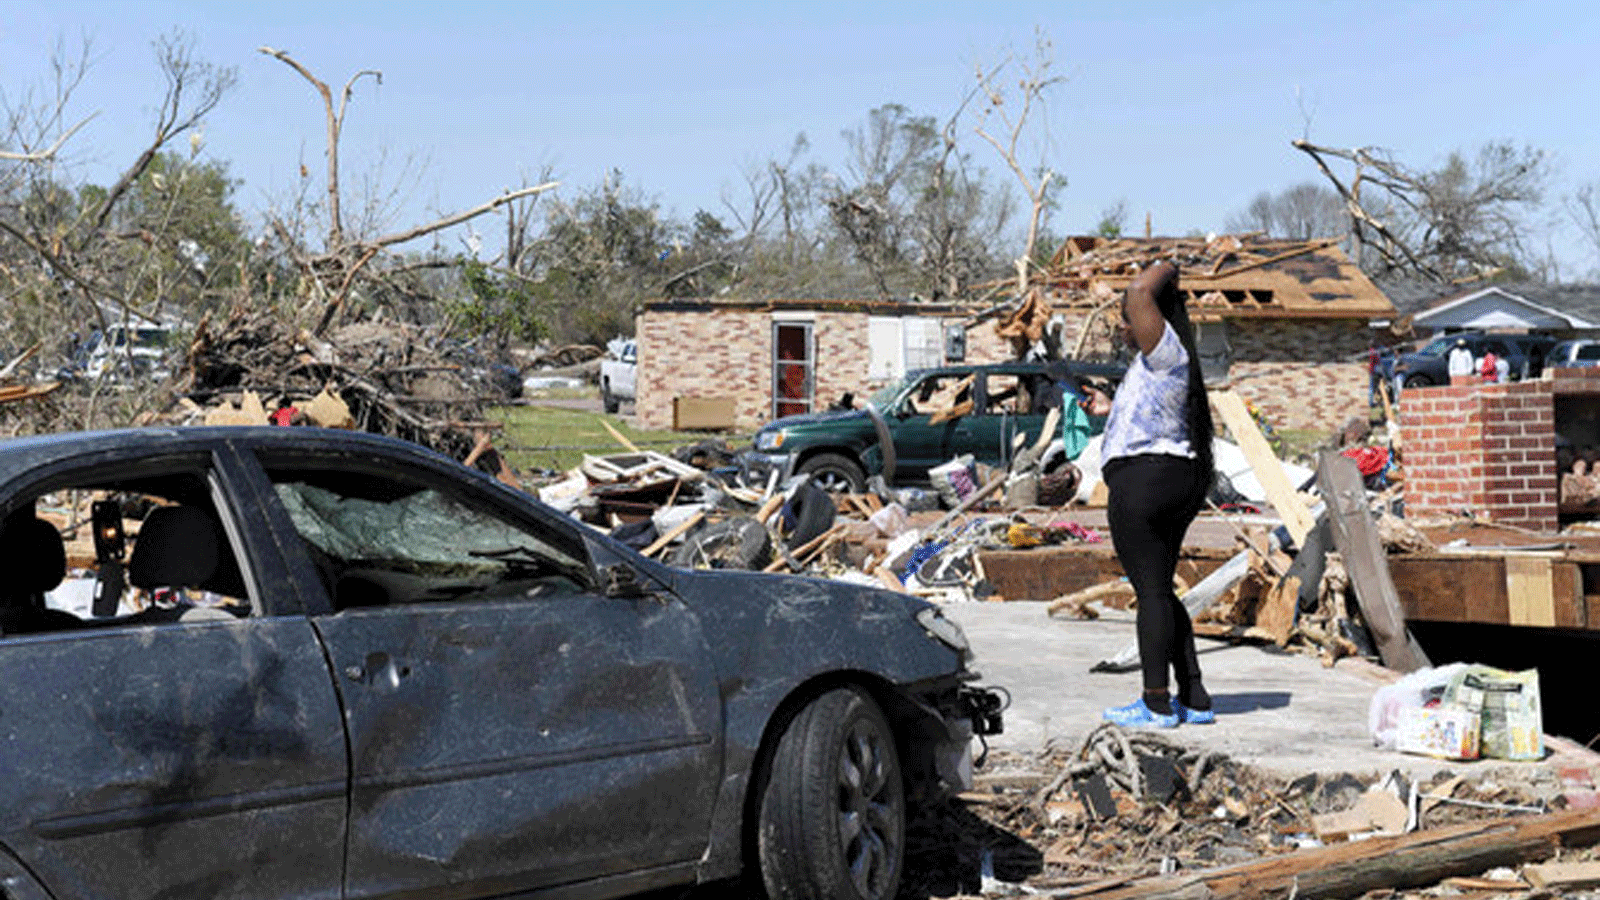 كنتريكا ساردين تقف حيث كانت غرفة نومها في المنزل الذي دمره الإعصار في رولينج فورك، ميسيسيبي. 25 آذار\مارس 2023